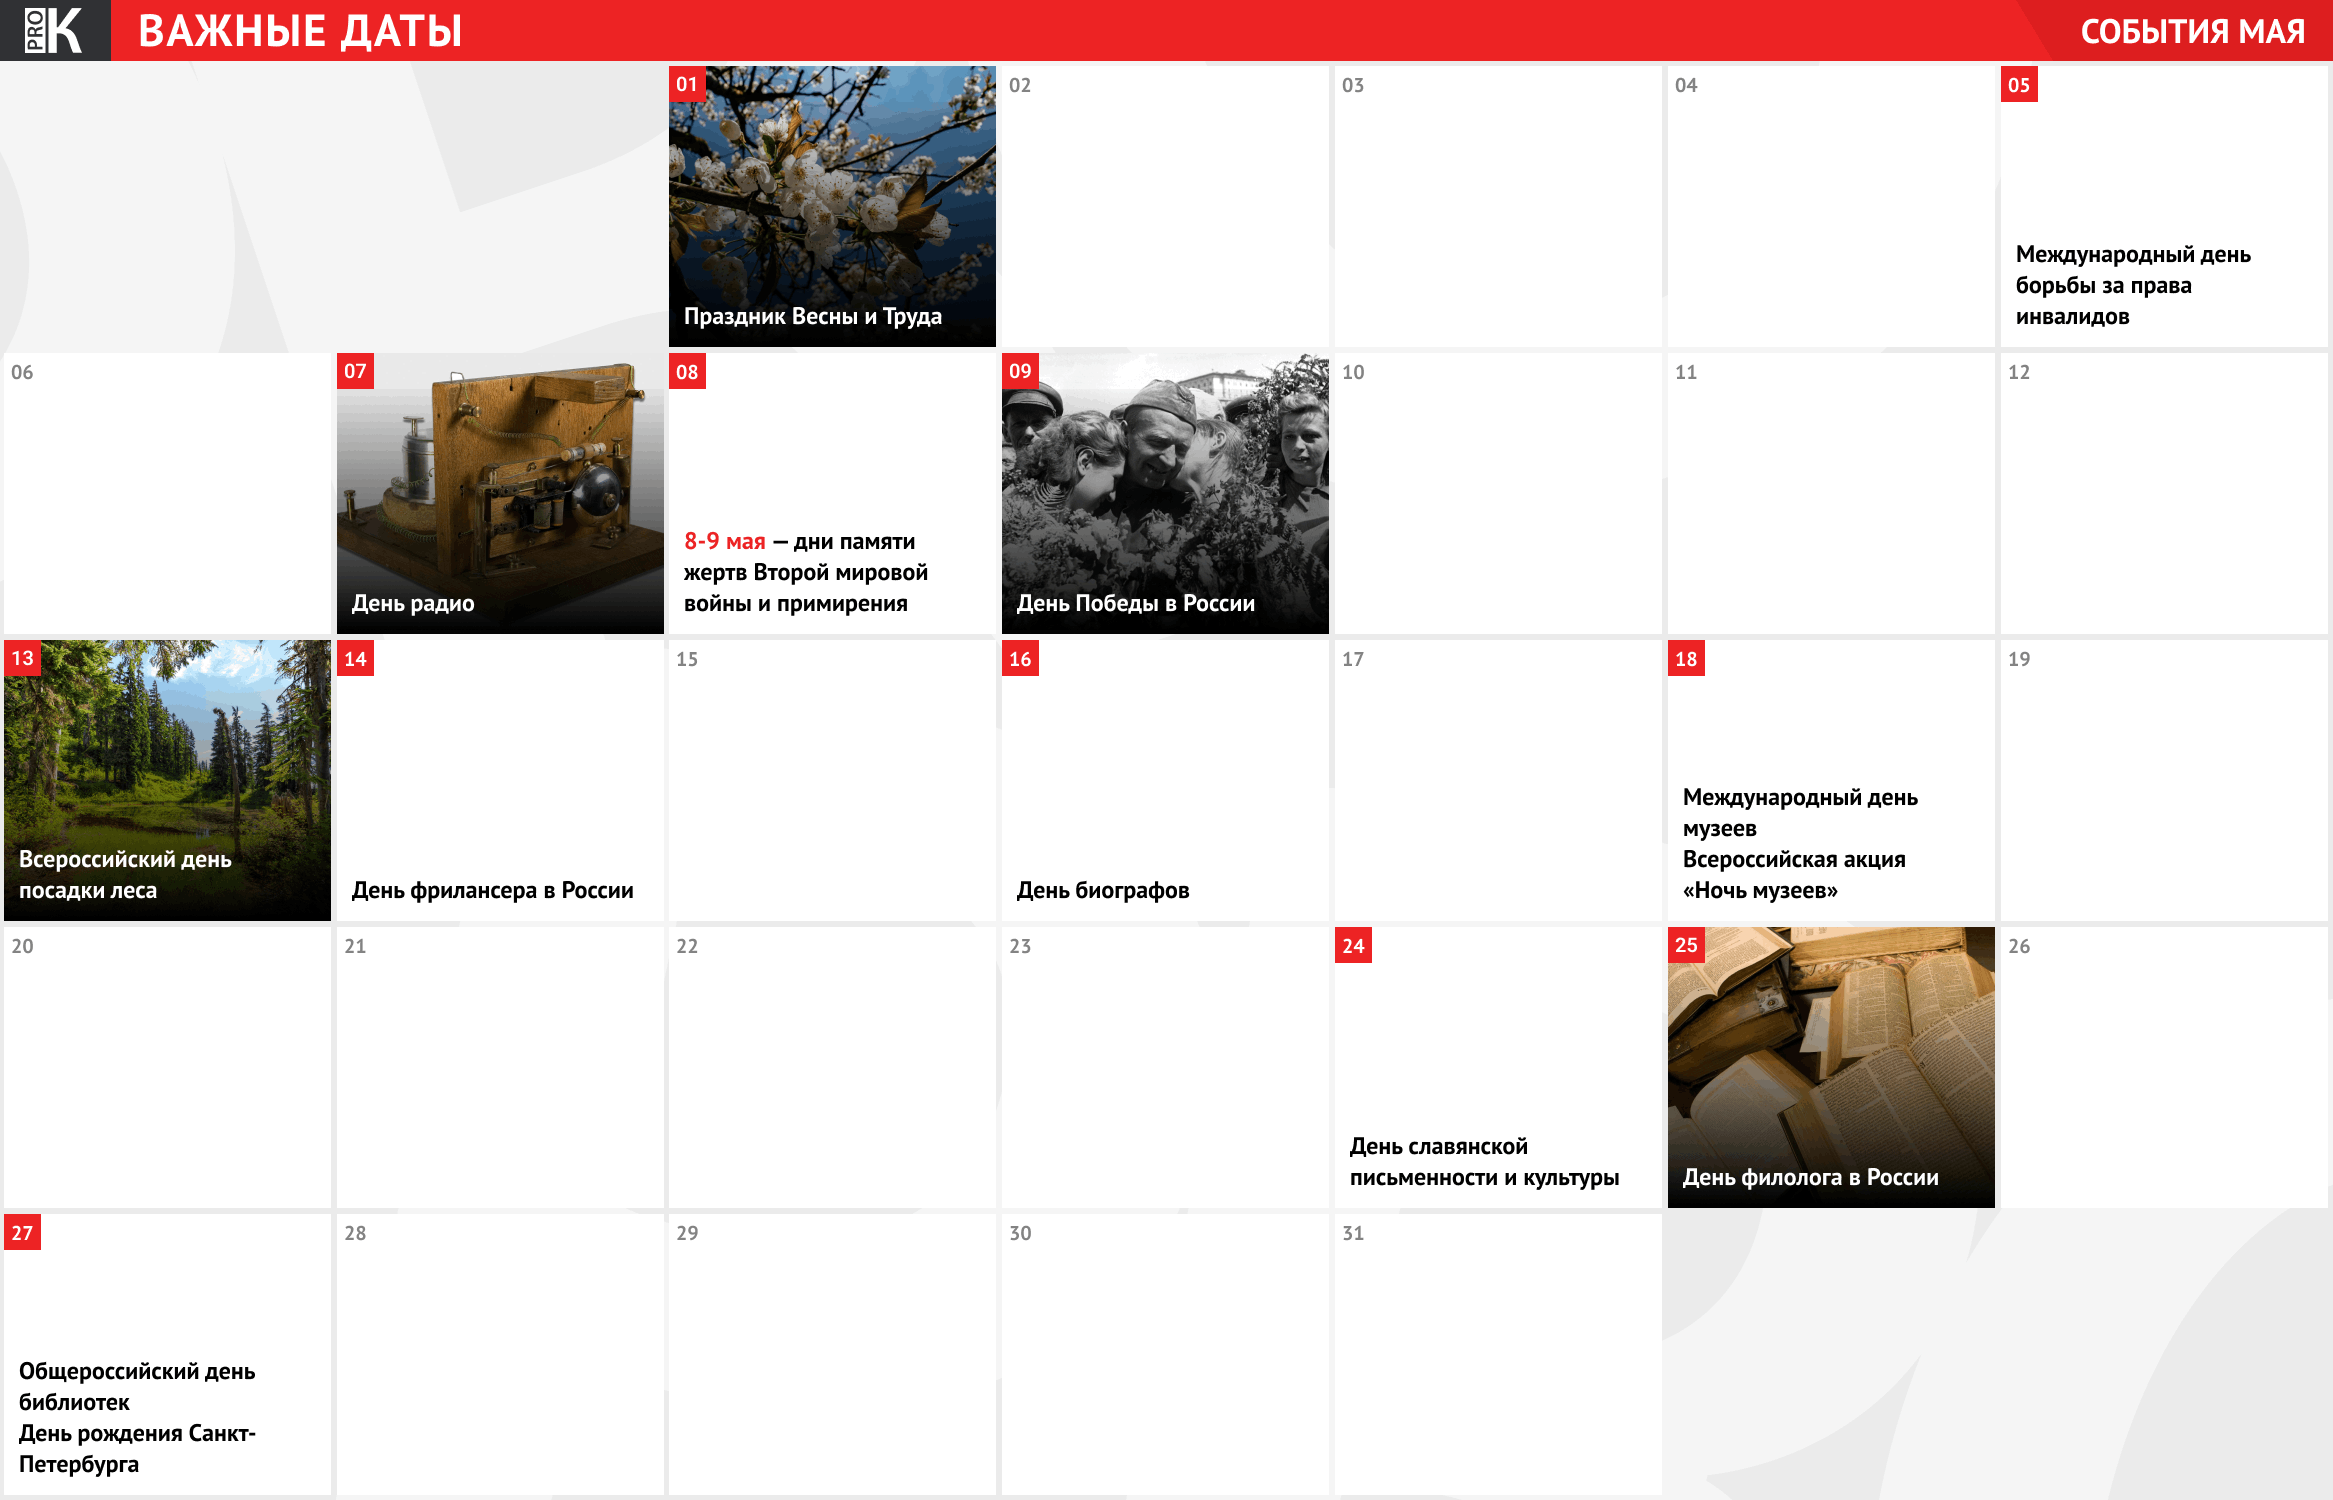 Календарь важных дат — май